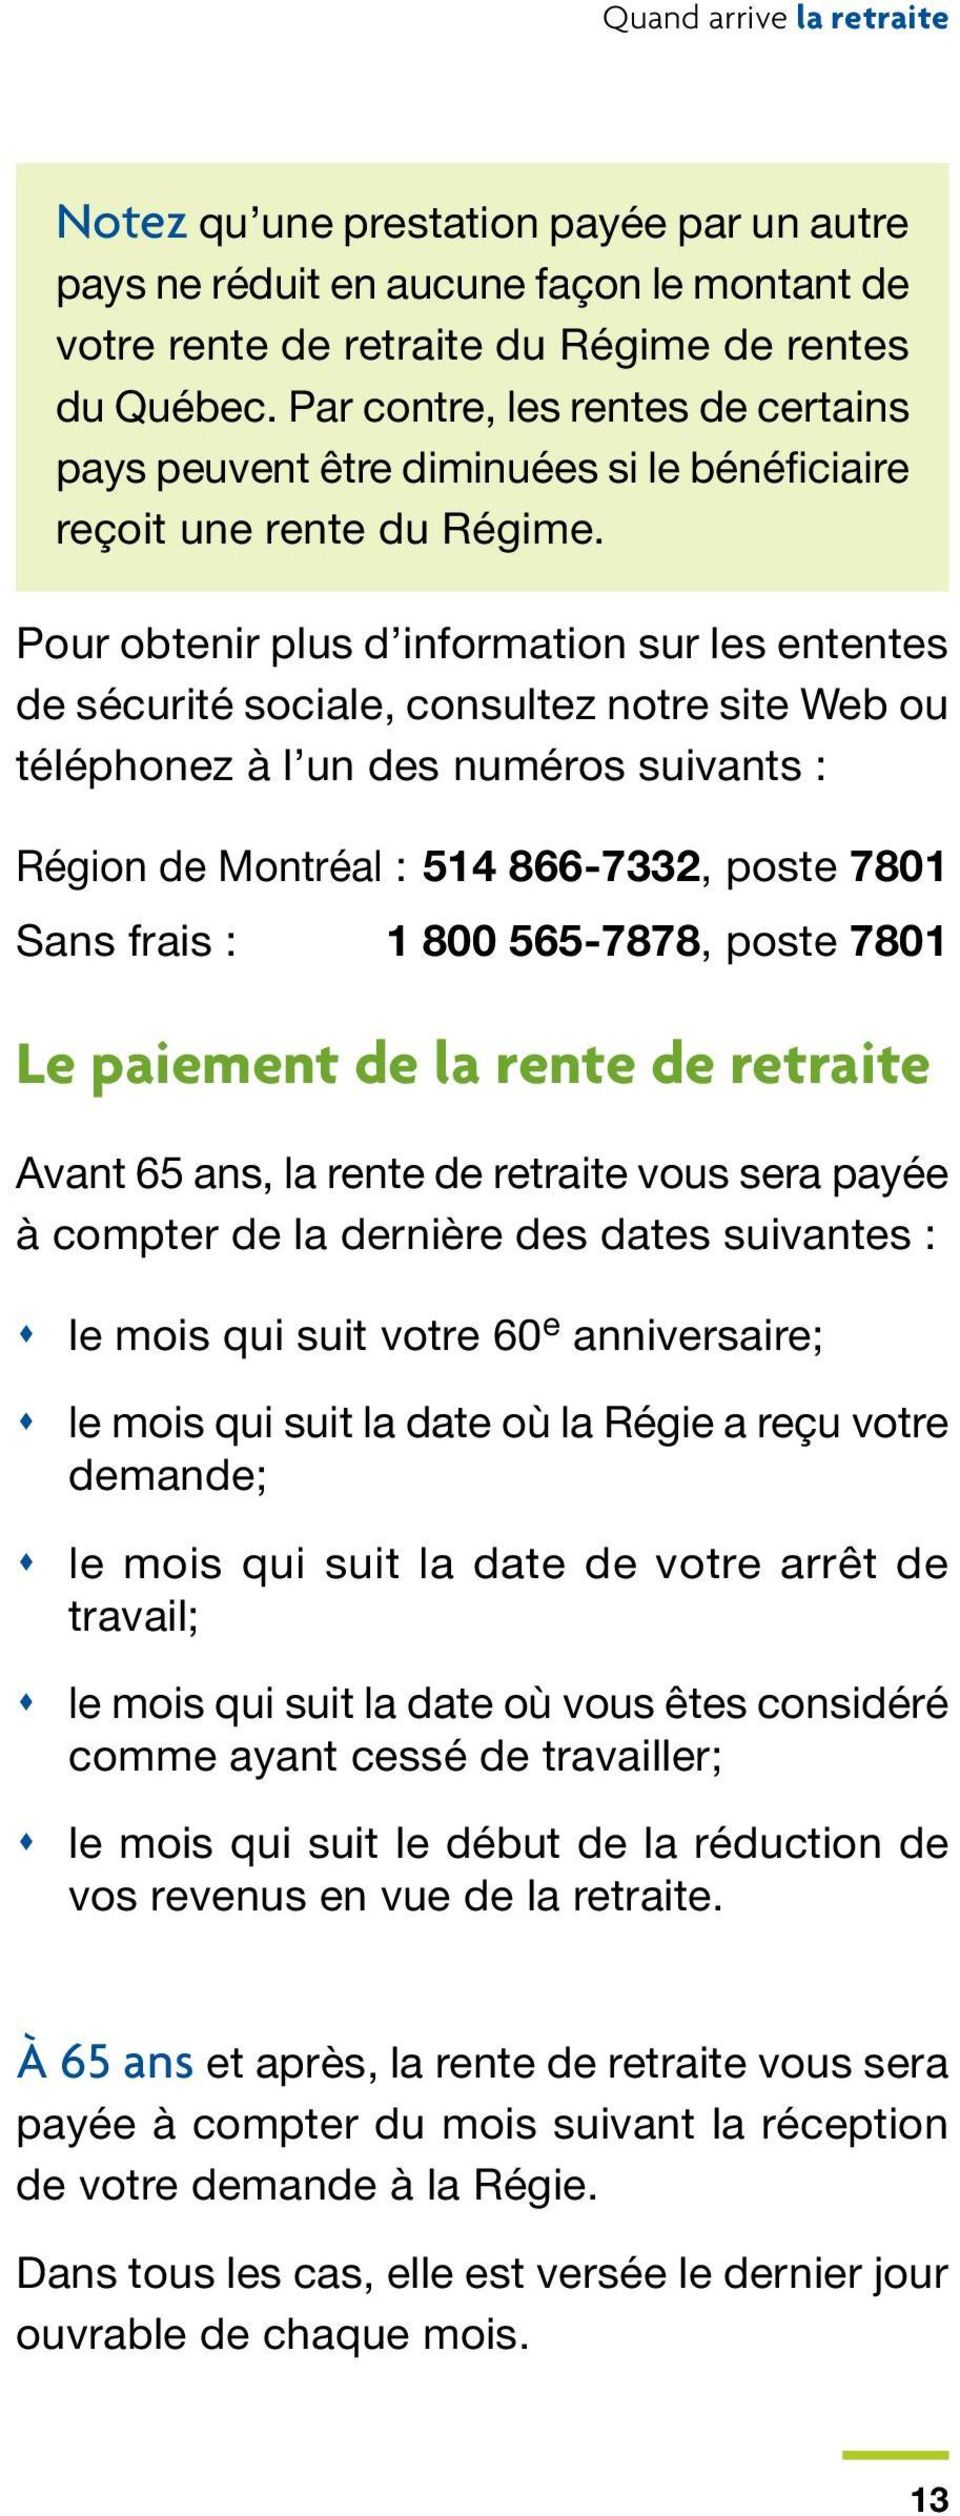 Pour obtenir plus d information sur les ententes de sécurité sociale, consultez notre site Web ou téléphonez à l un des numéros suivants : Région de Montréal : 514 866-7332, poste 7801 Sans frais : 1